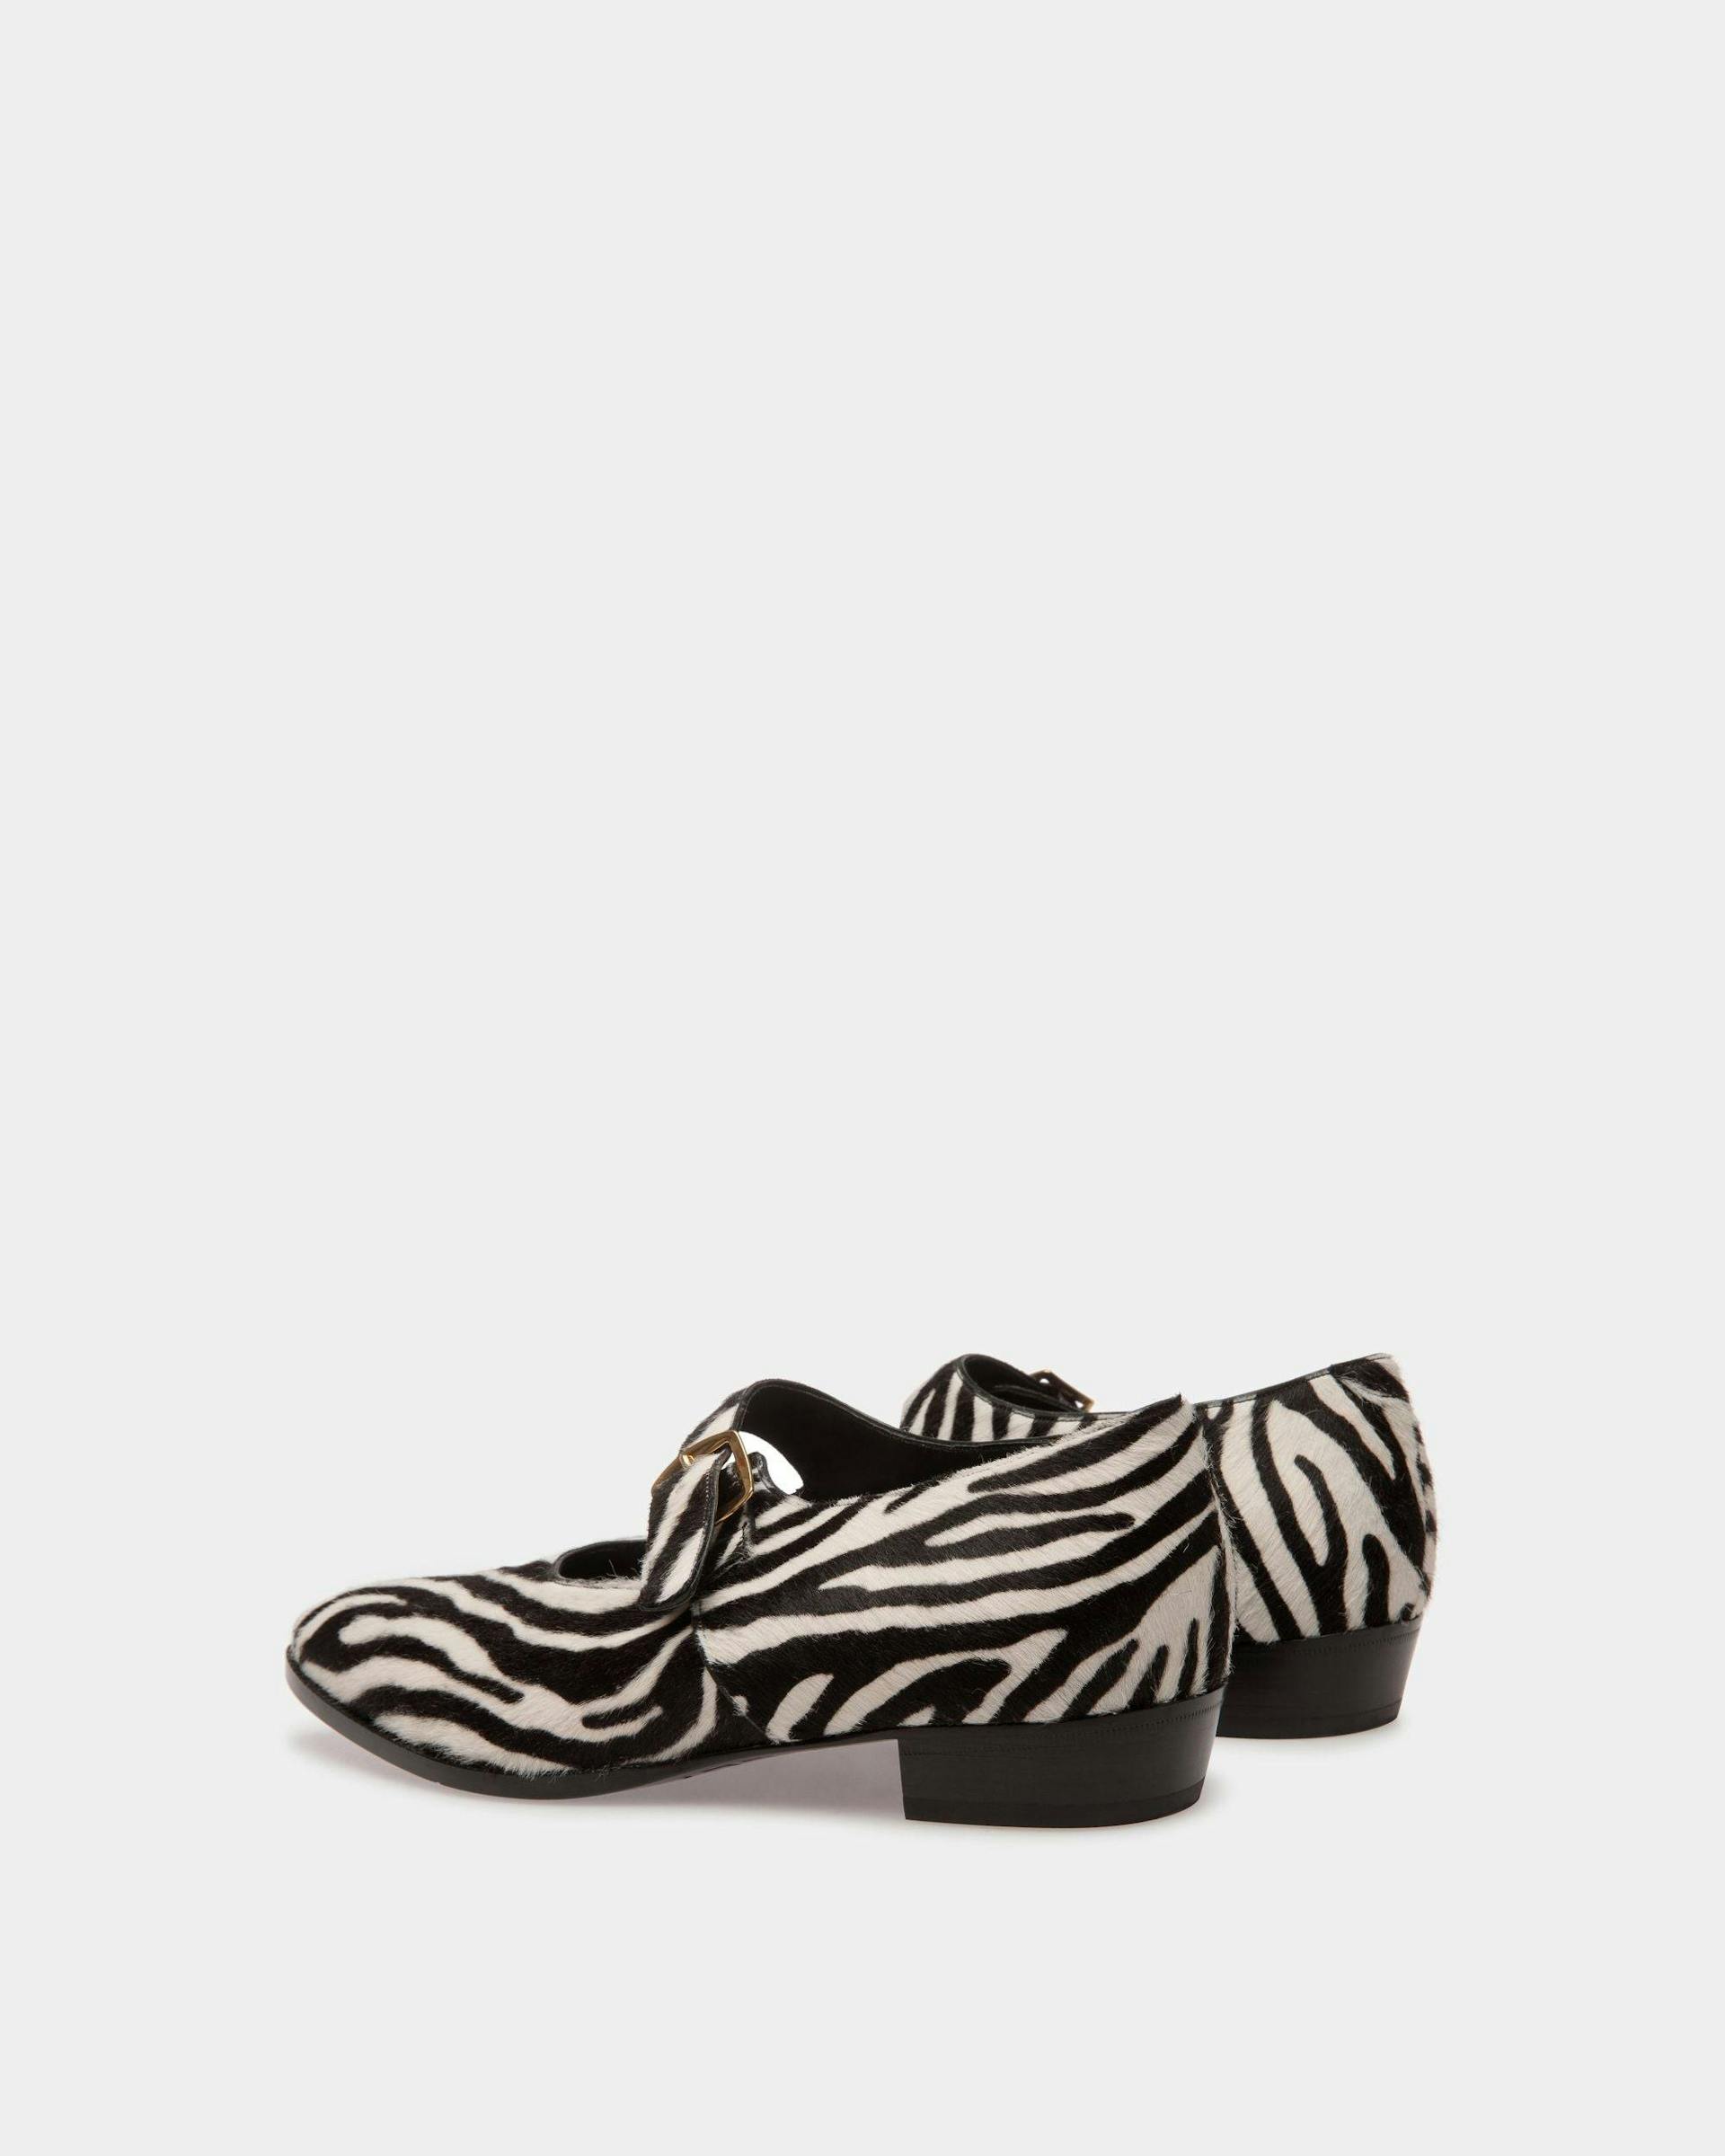 Chaussures Monkstrap Glendale En Cuir De Veau Façon Poulain Noir Et Blanc - Femme - Bally - 03